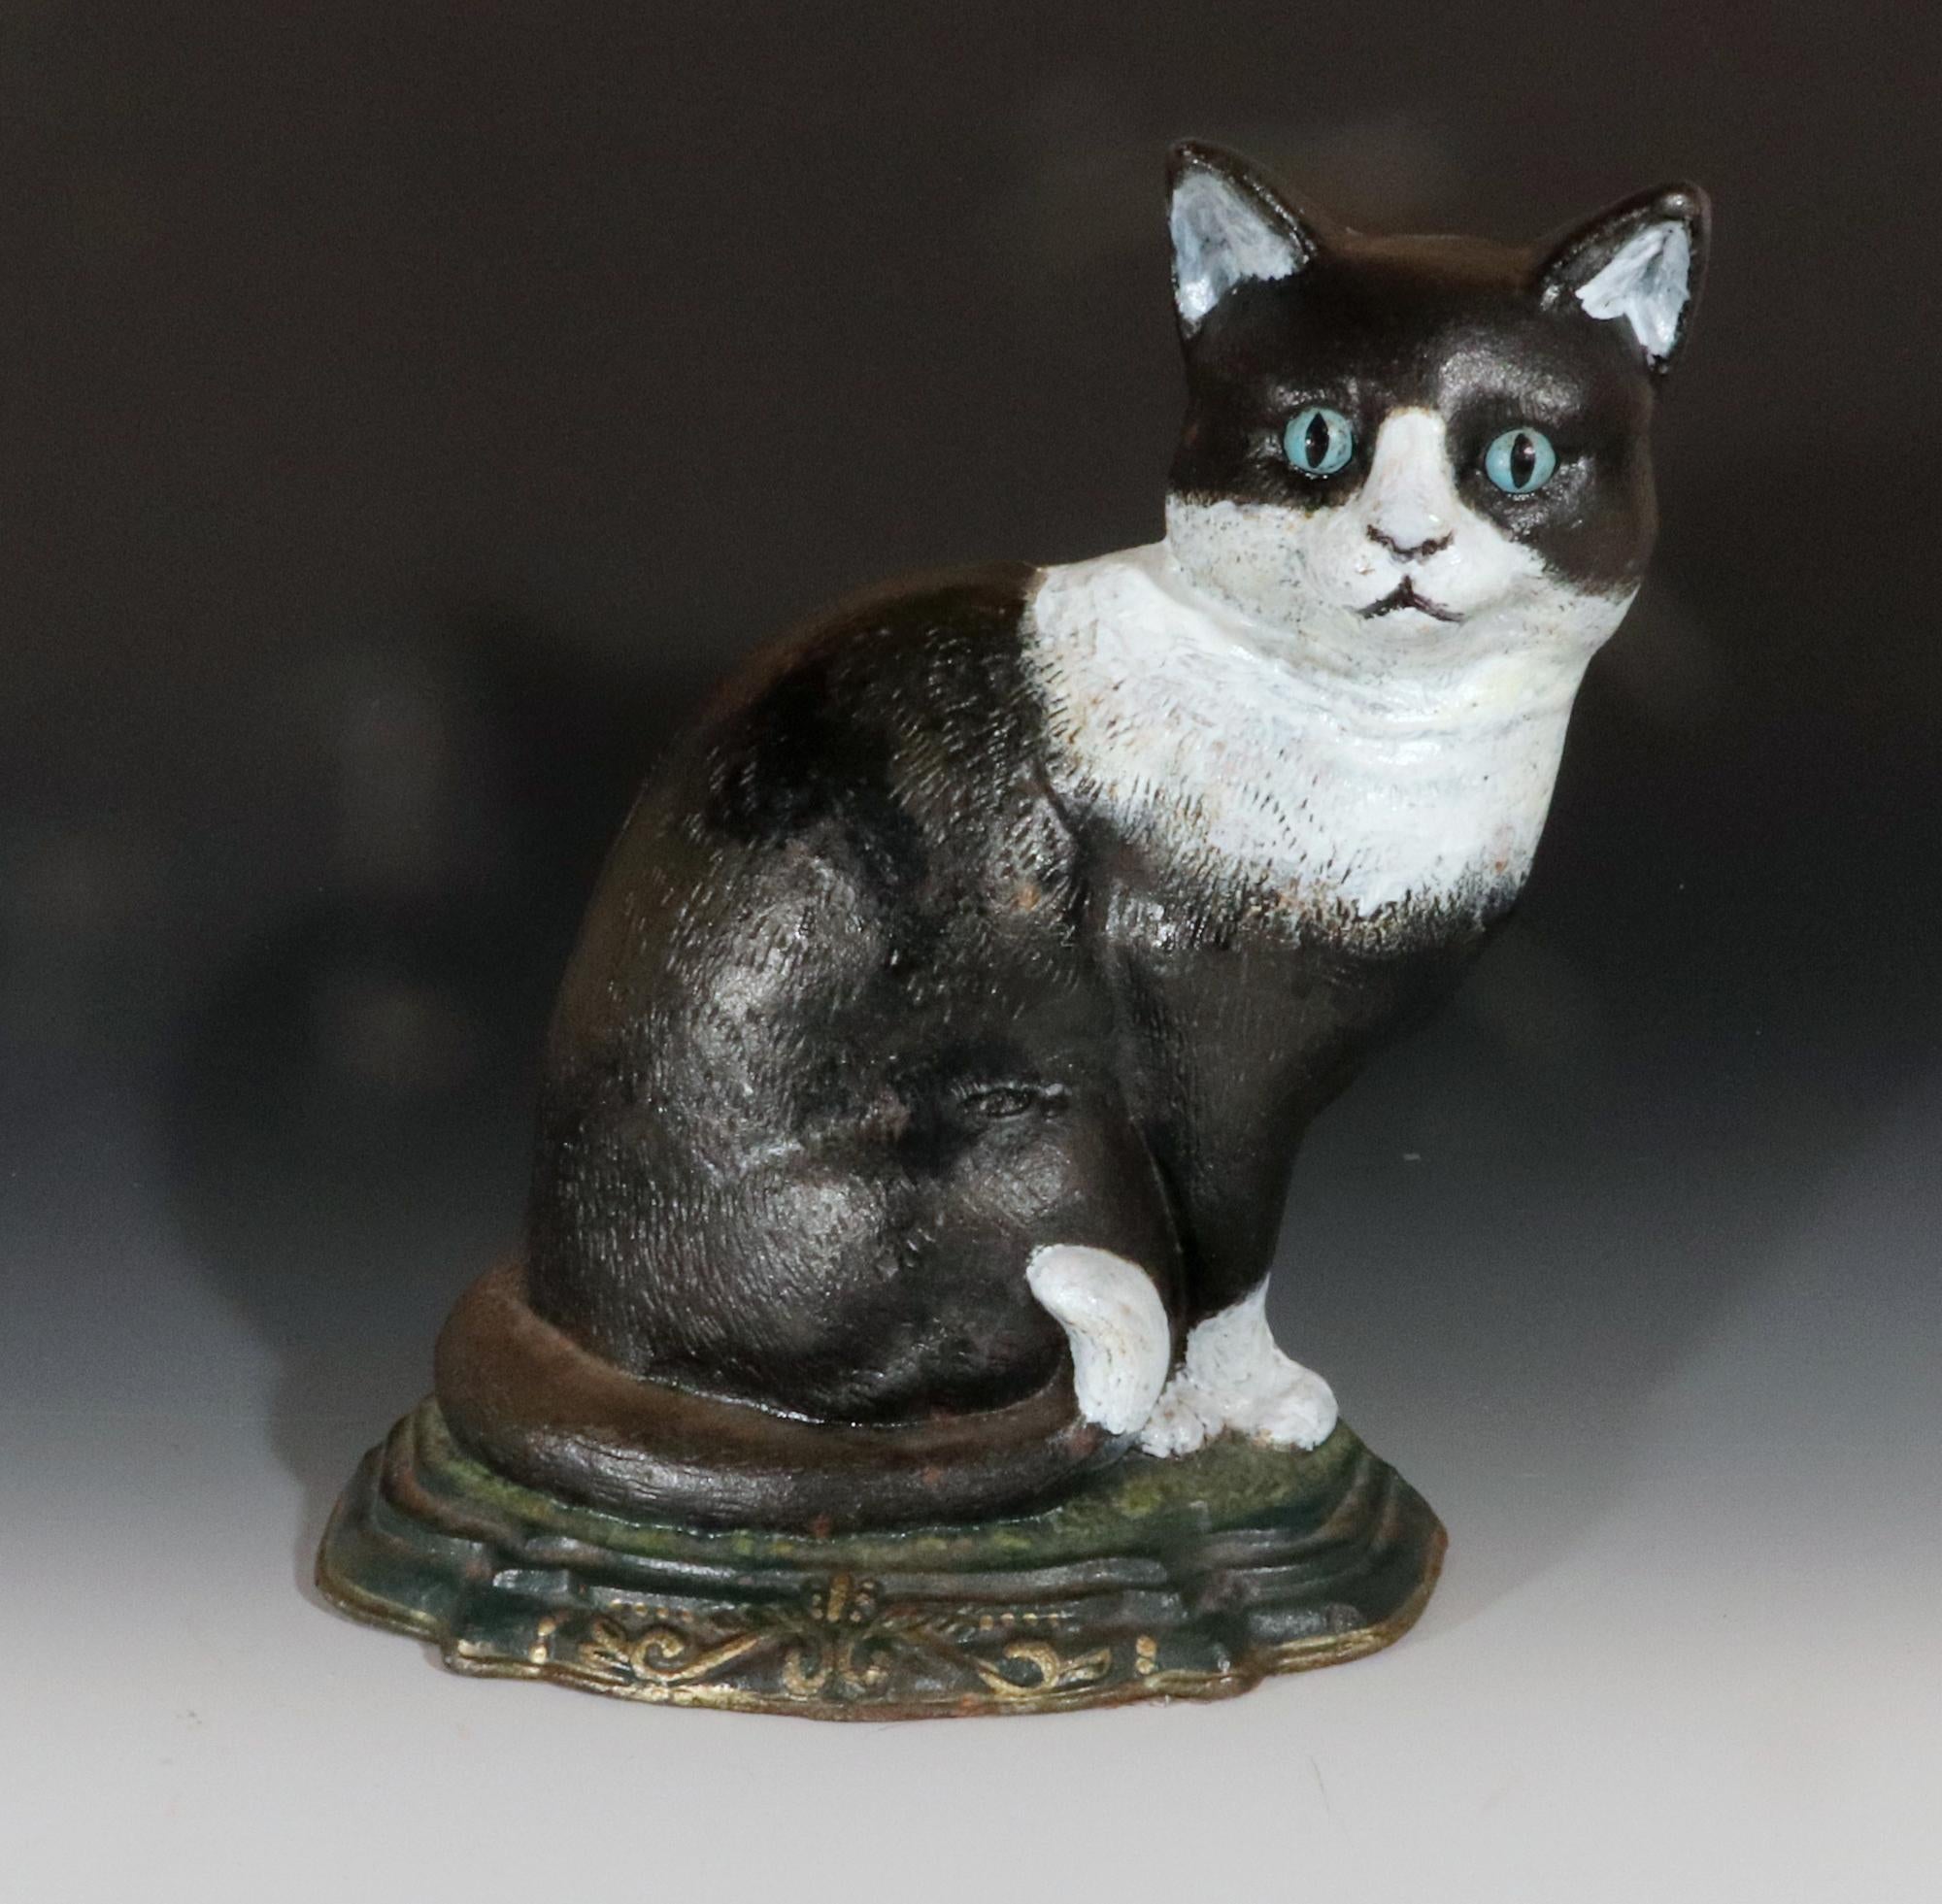 Butoir de porte d'art populaire américain en forme de chat assis,
Début du 20e siècle

Ce charmant butoir de porte, fabriqué au début du XXe siècle, incarne l'esprit de l'art populaire américain.  Représentant un chat noir et blanc assis, la pièce